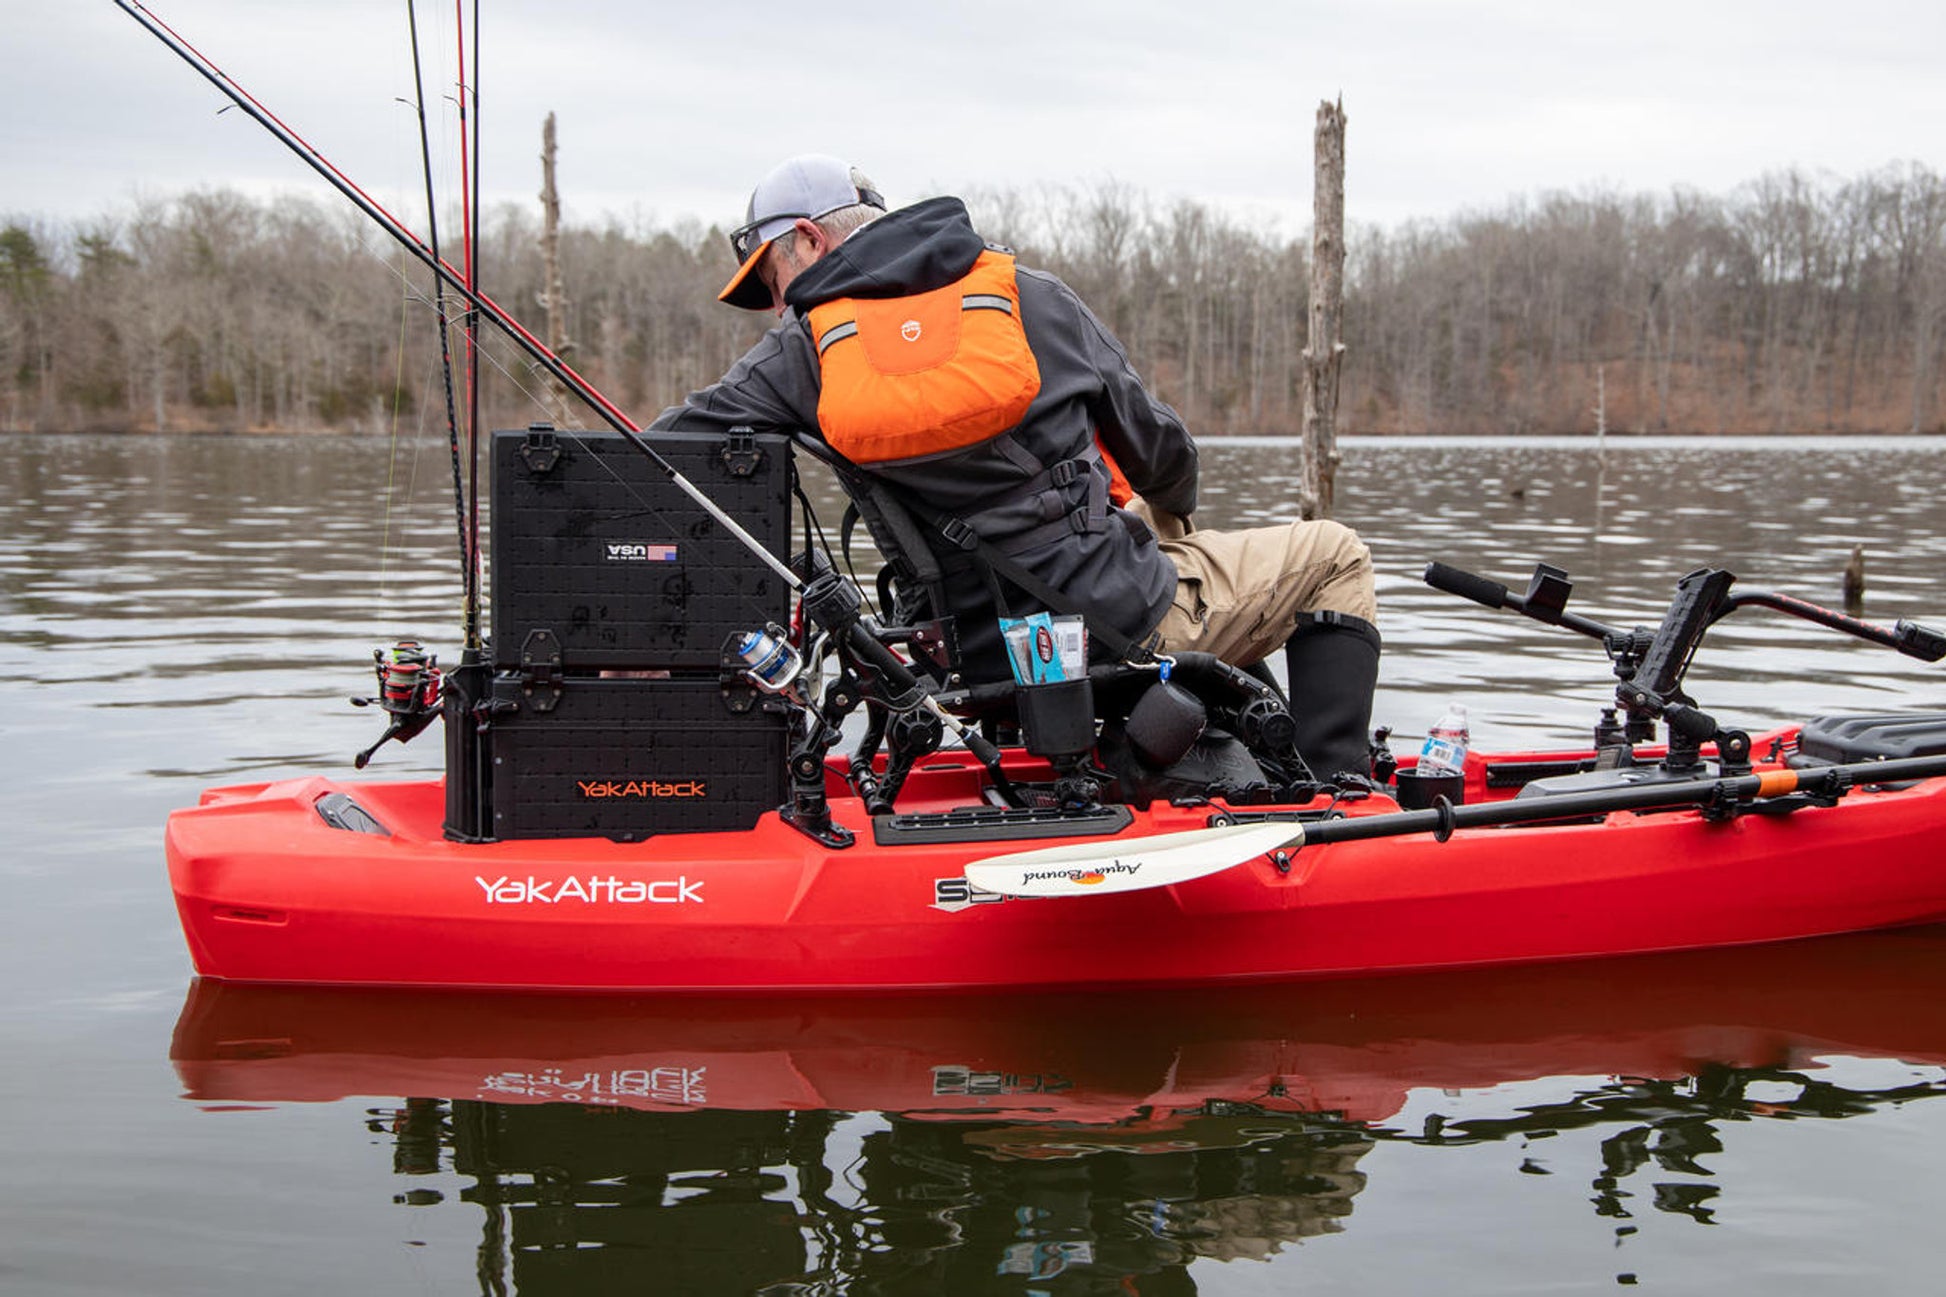 YakAttack BlackPak Pro Kayak Fishing Crate - 13 x 16 – YAKWORKS